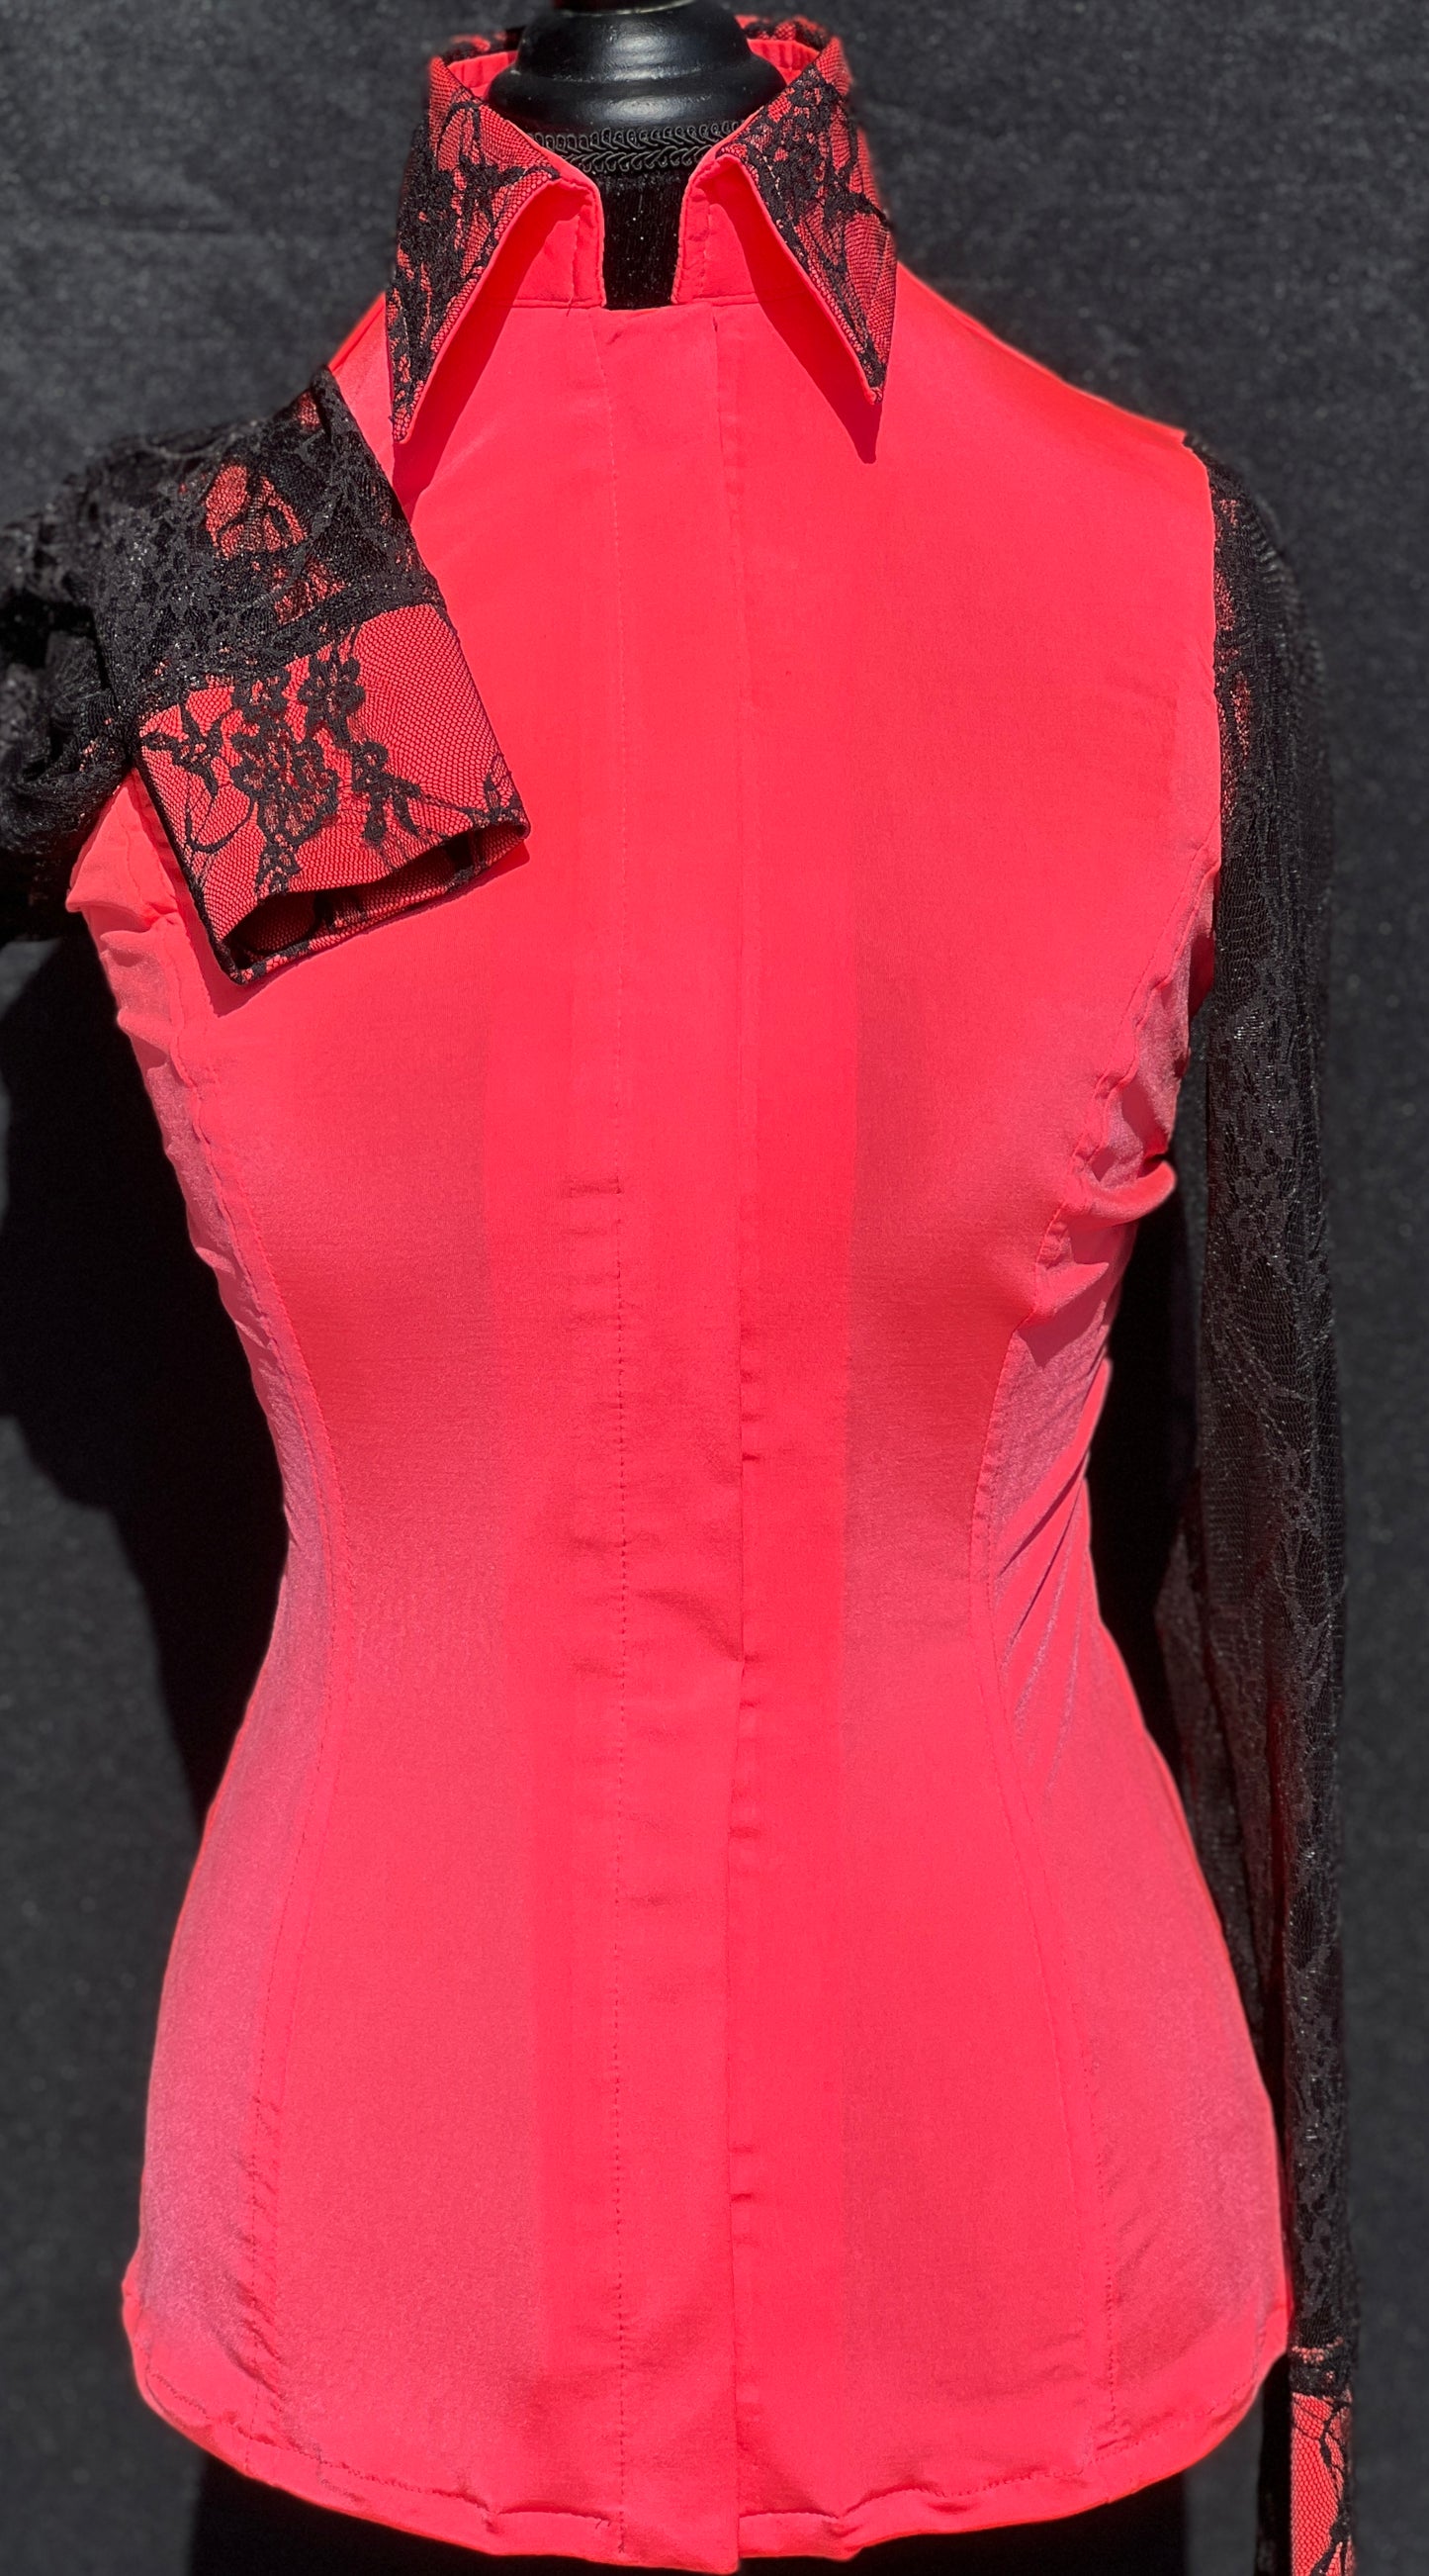 Neon Coral Lace Sleeve Hidden Zipper Light Weight Fitted Shirt